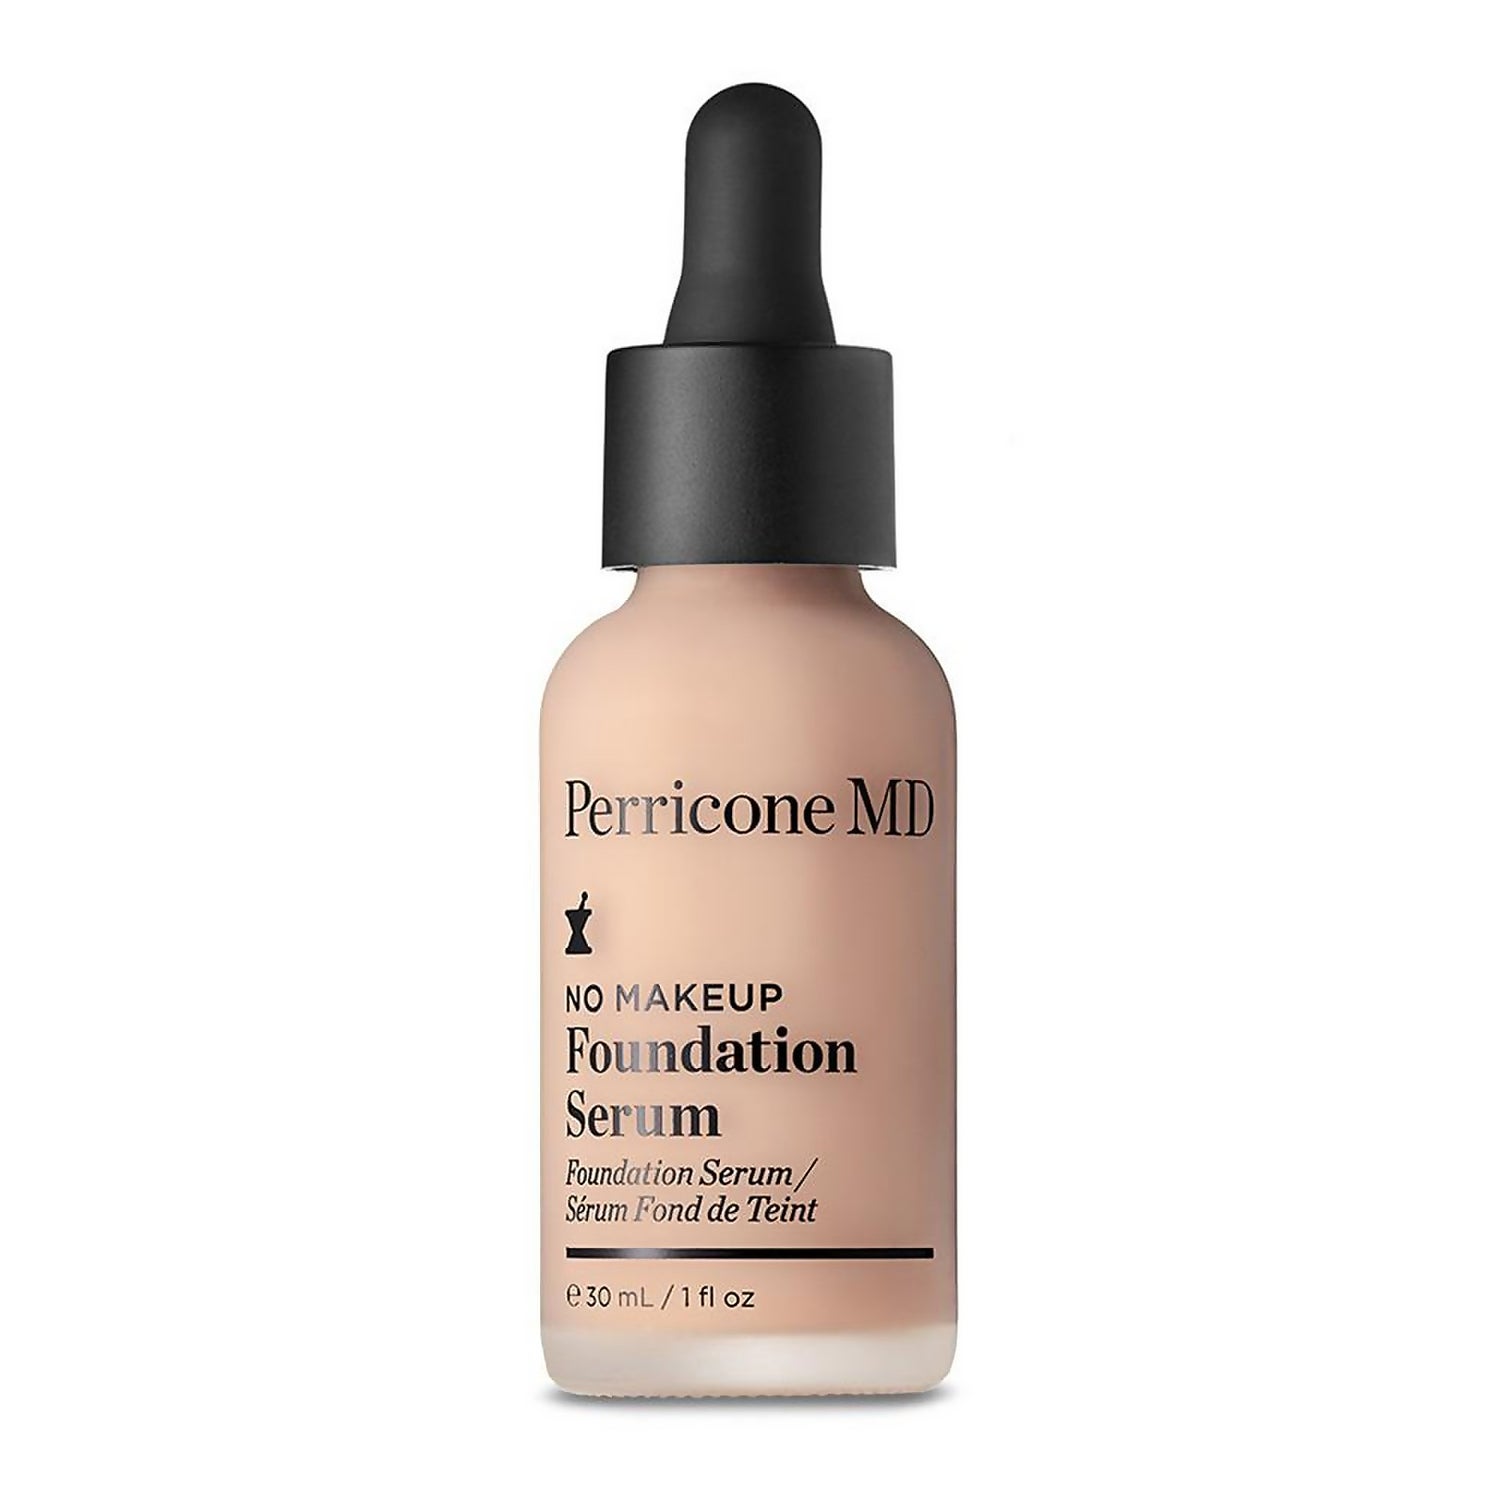 Perricone MD No Makeup Skincare Foundation 1 fl. oz - Serum (Various Shades)